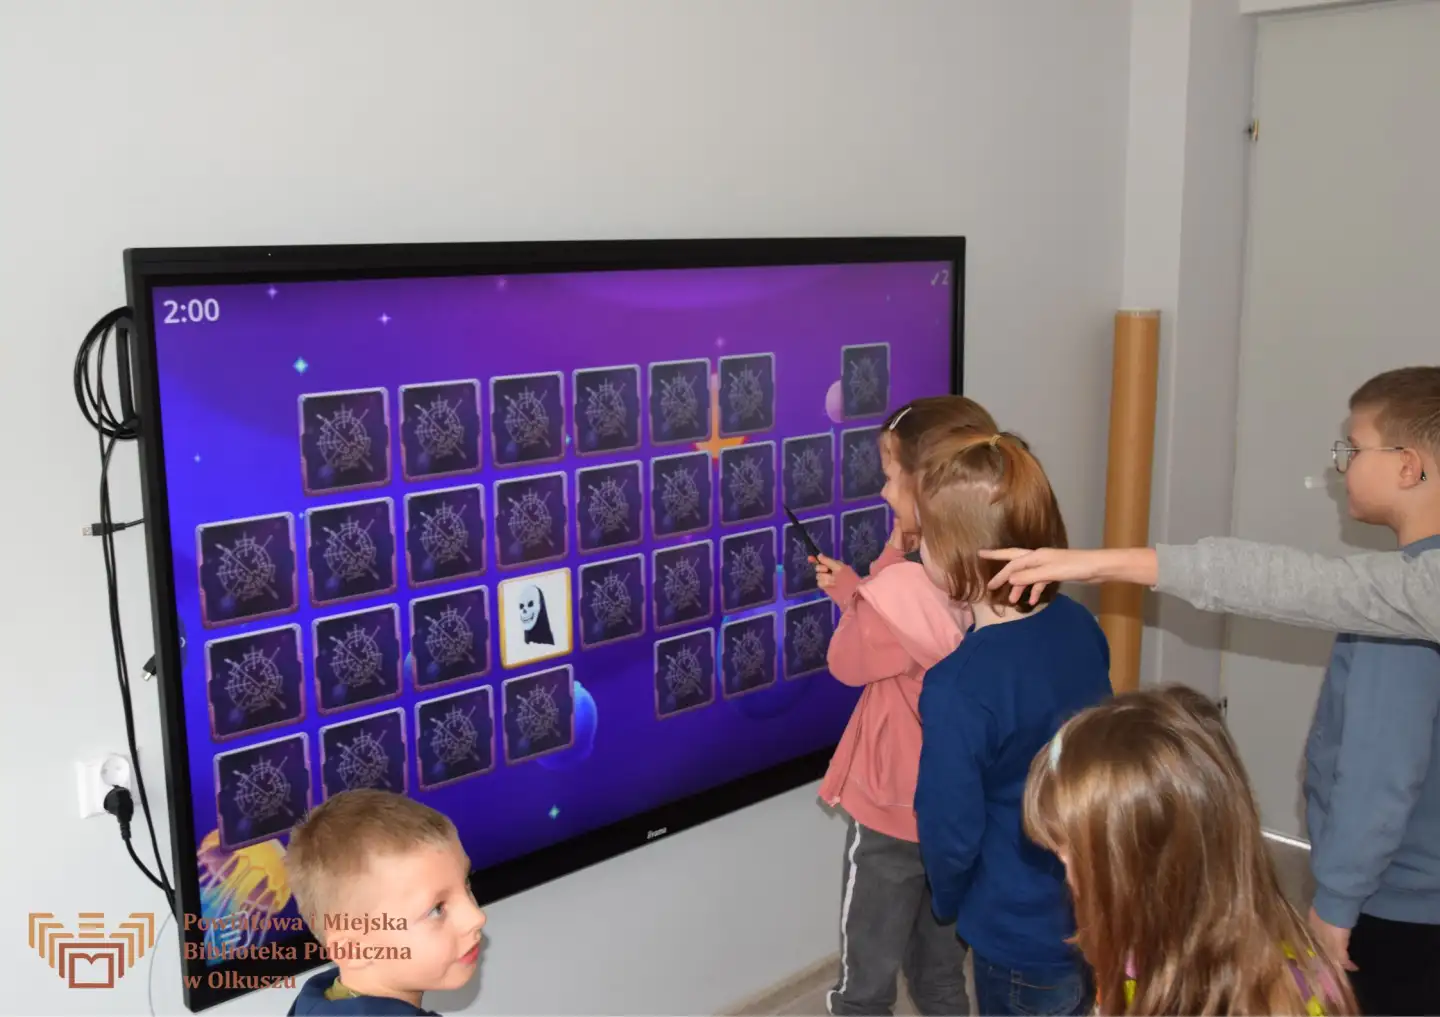 Grupa dzieci stoi przy tablicy interaktywnej. Jedna dziewczynka dotyka ekran, na którym znajdują się kafelki do gry MEMORY.